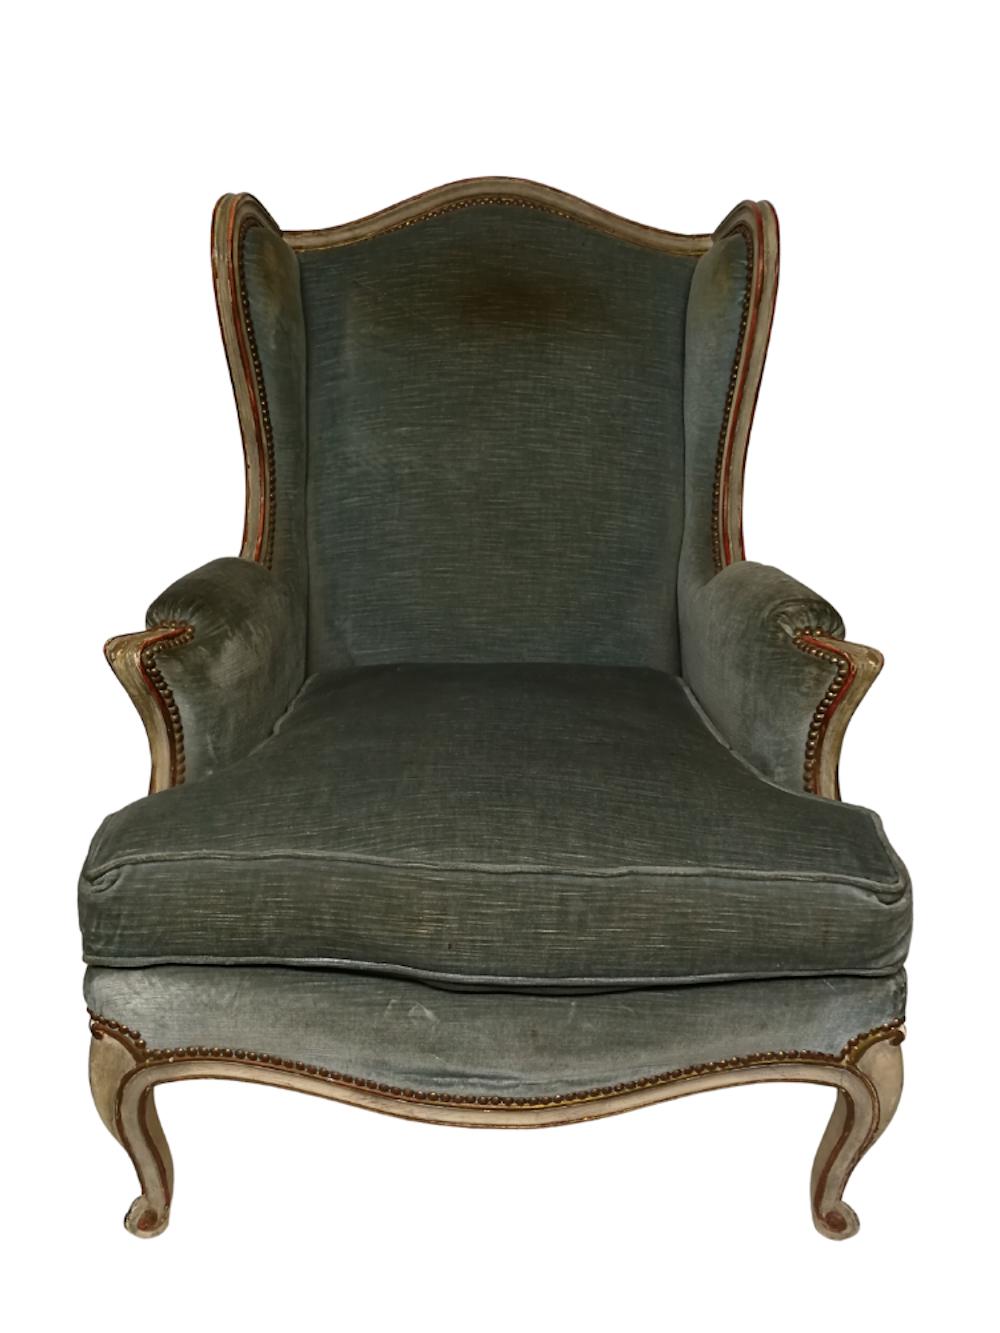 Beau et confortable fauteuil Louis XV 